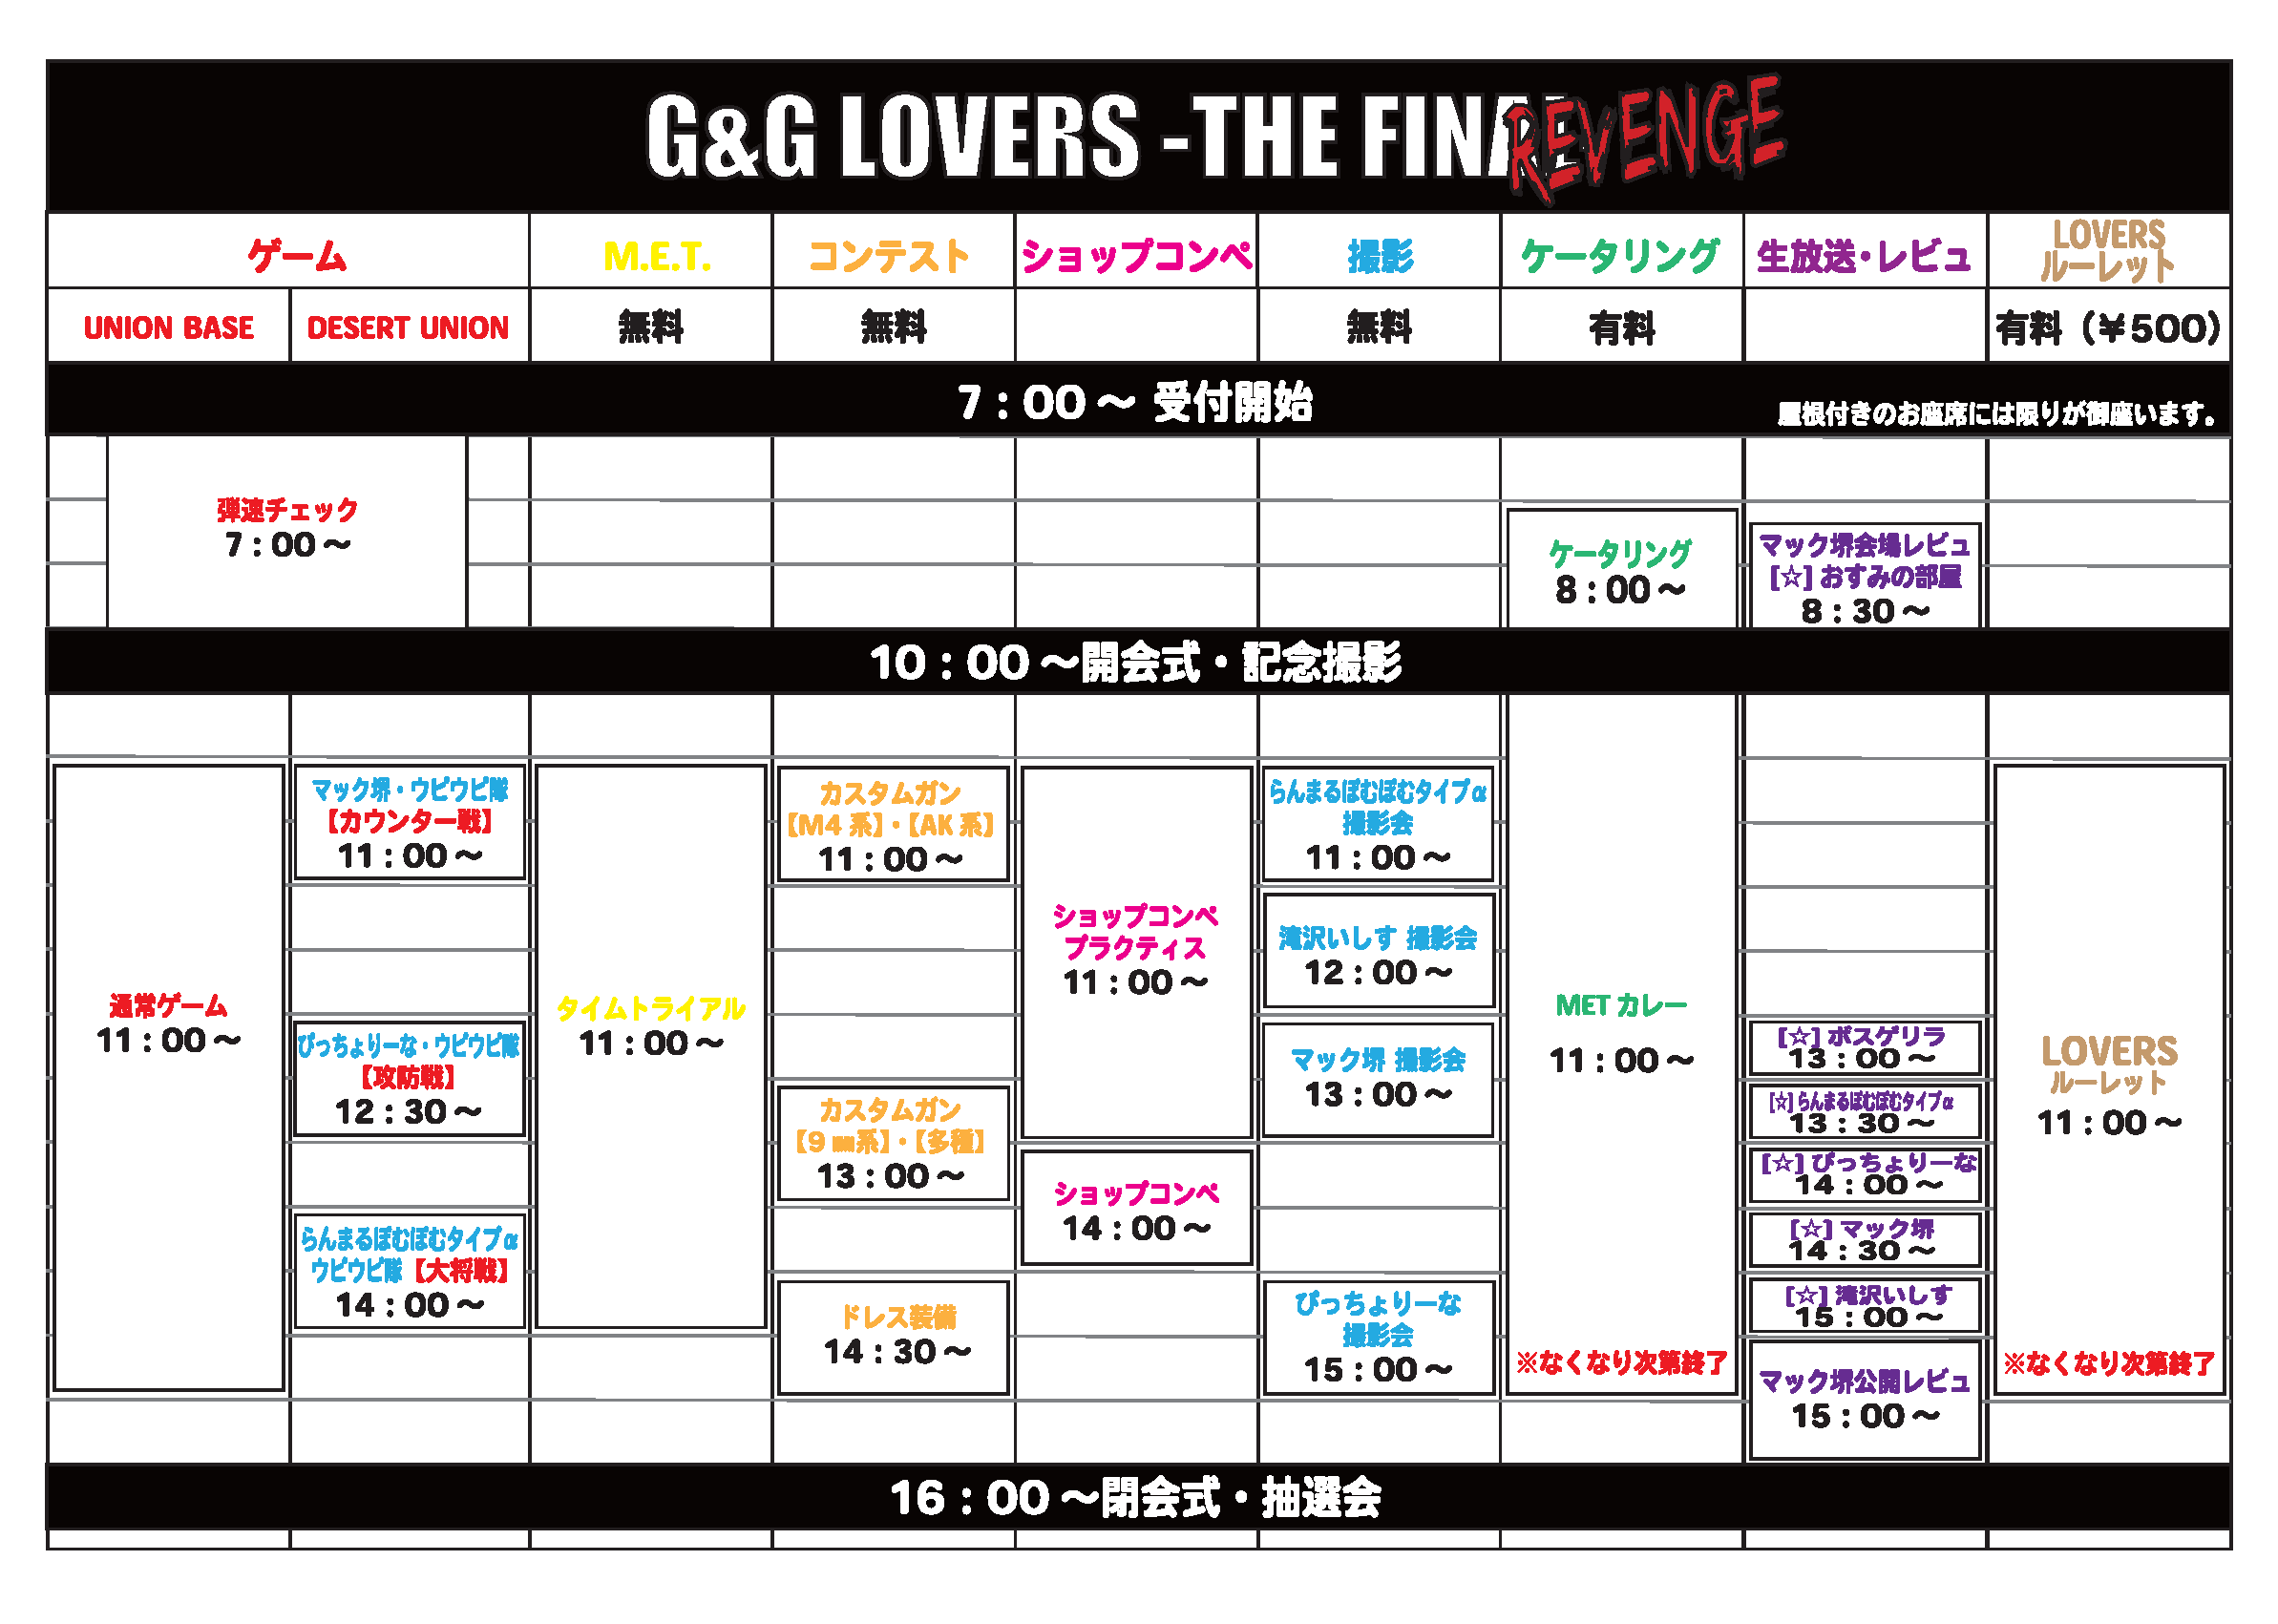 タイムテーブル　G&G LOVERS -THE FINAL- REVENGE